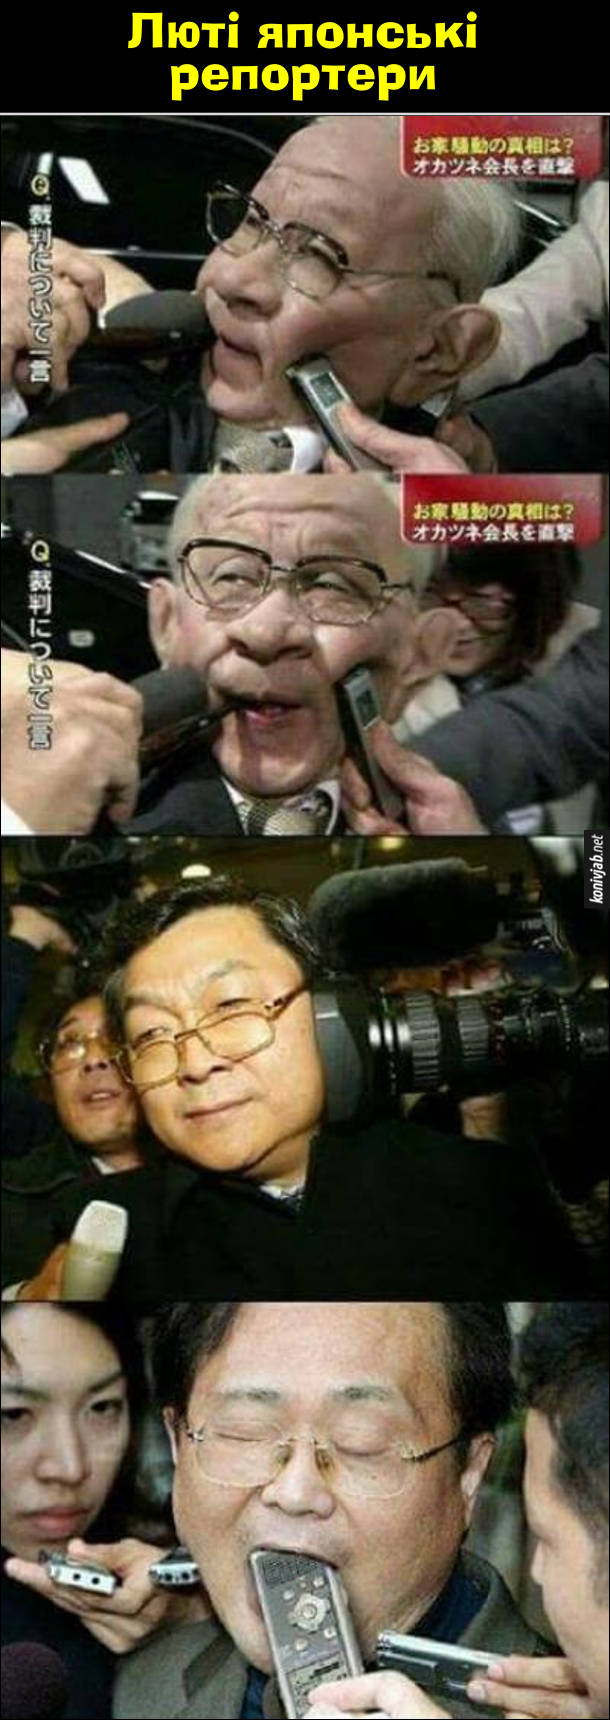 Люті японські репортери пхають мікрофони прямо в обличчя